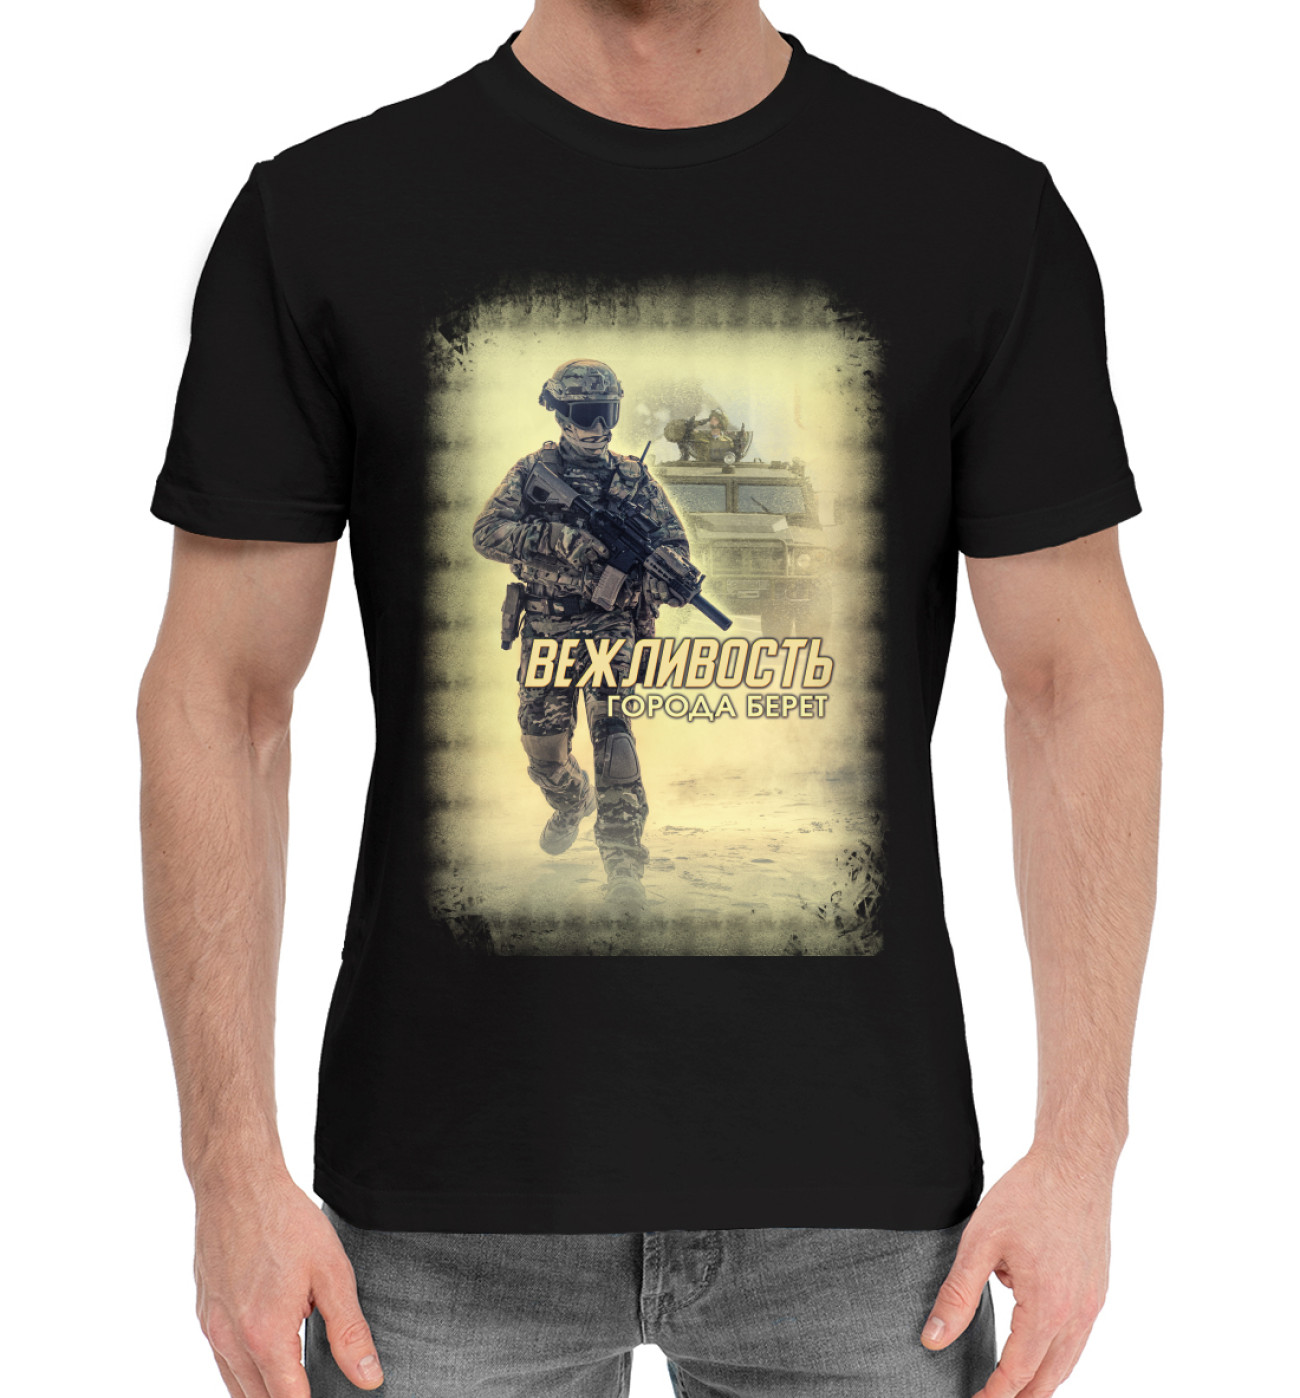 Мужская Хлопковая футболка Вежливость города берет, артикул: MIN-837453-hfu-2